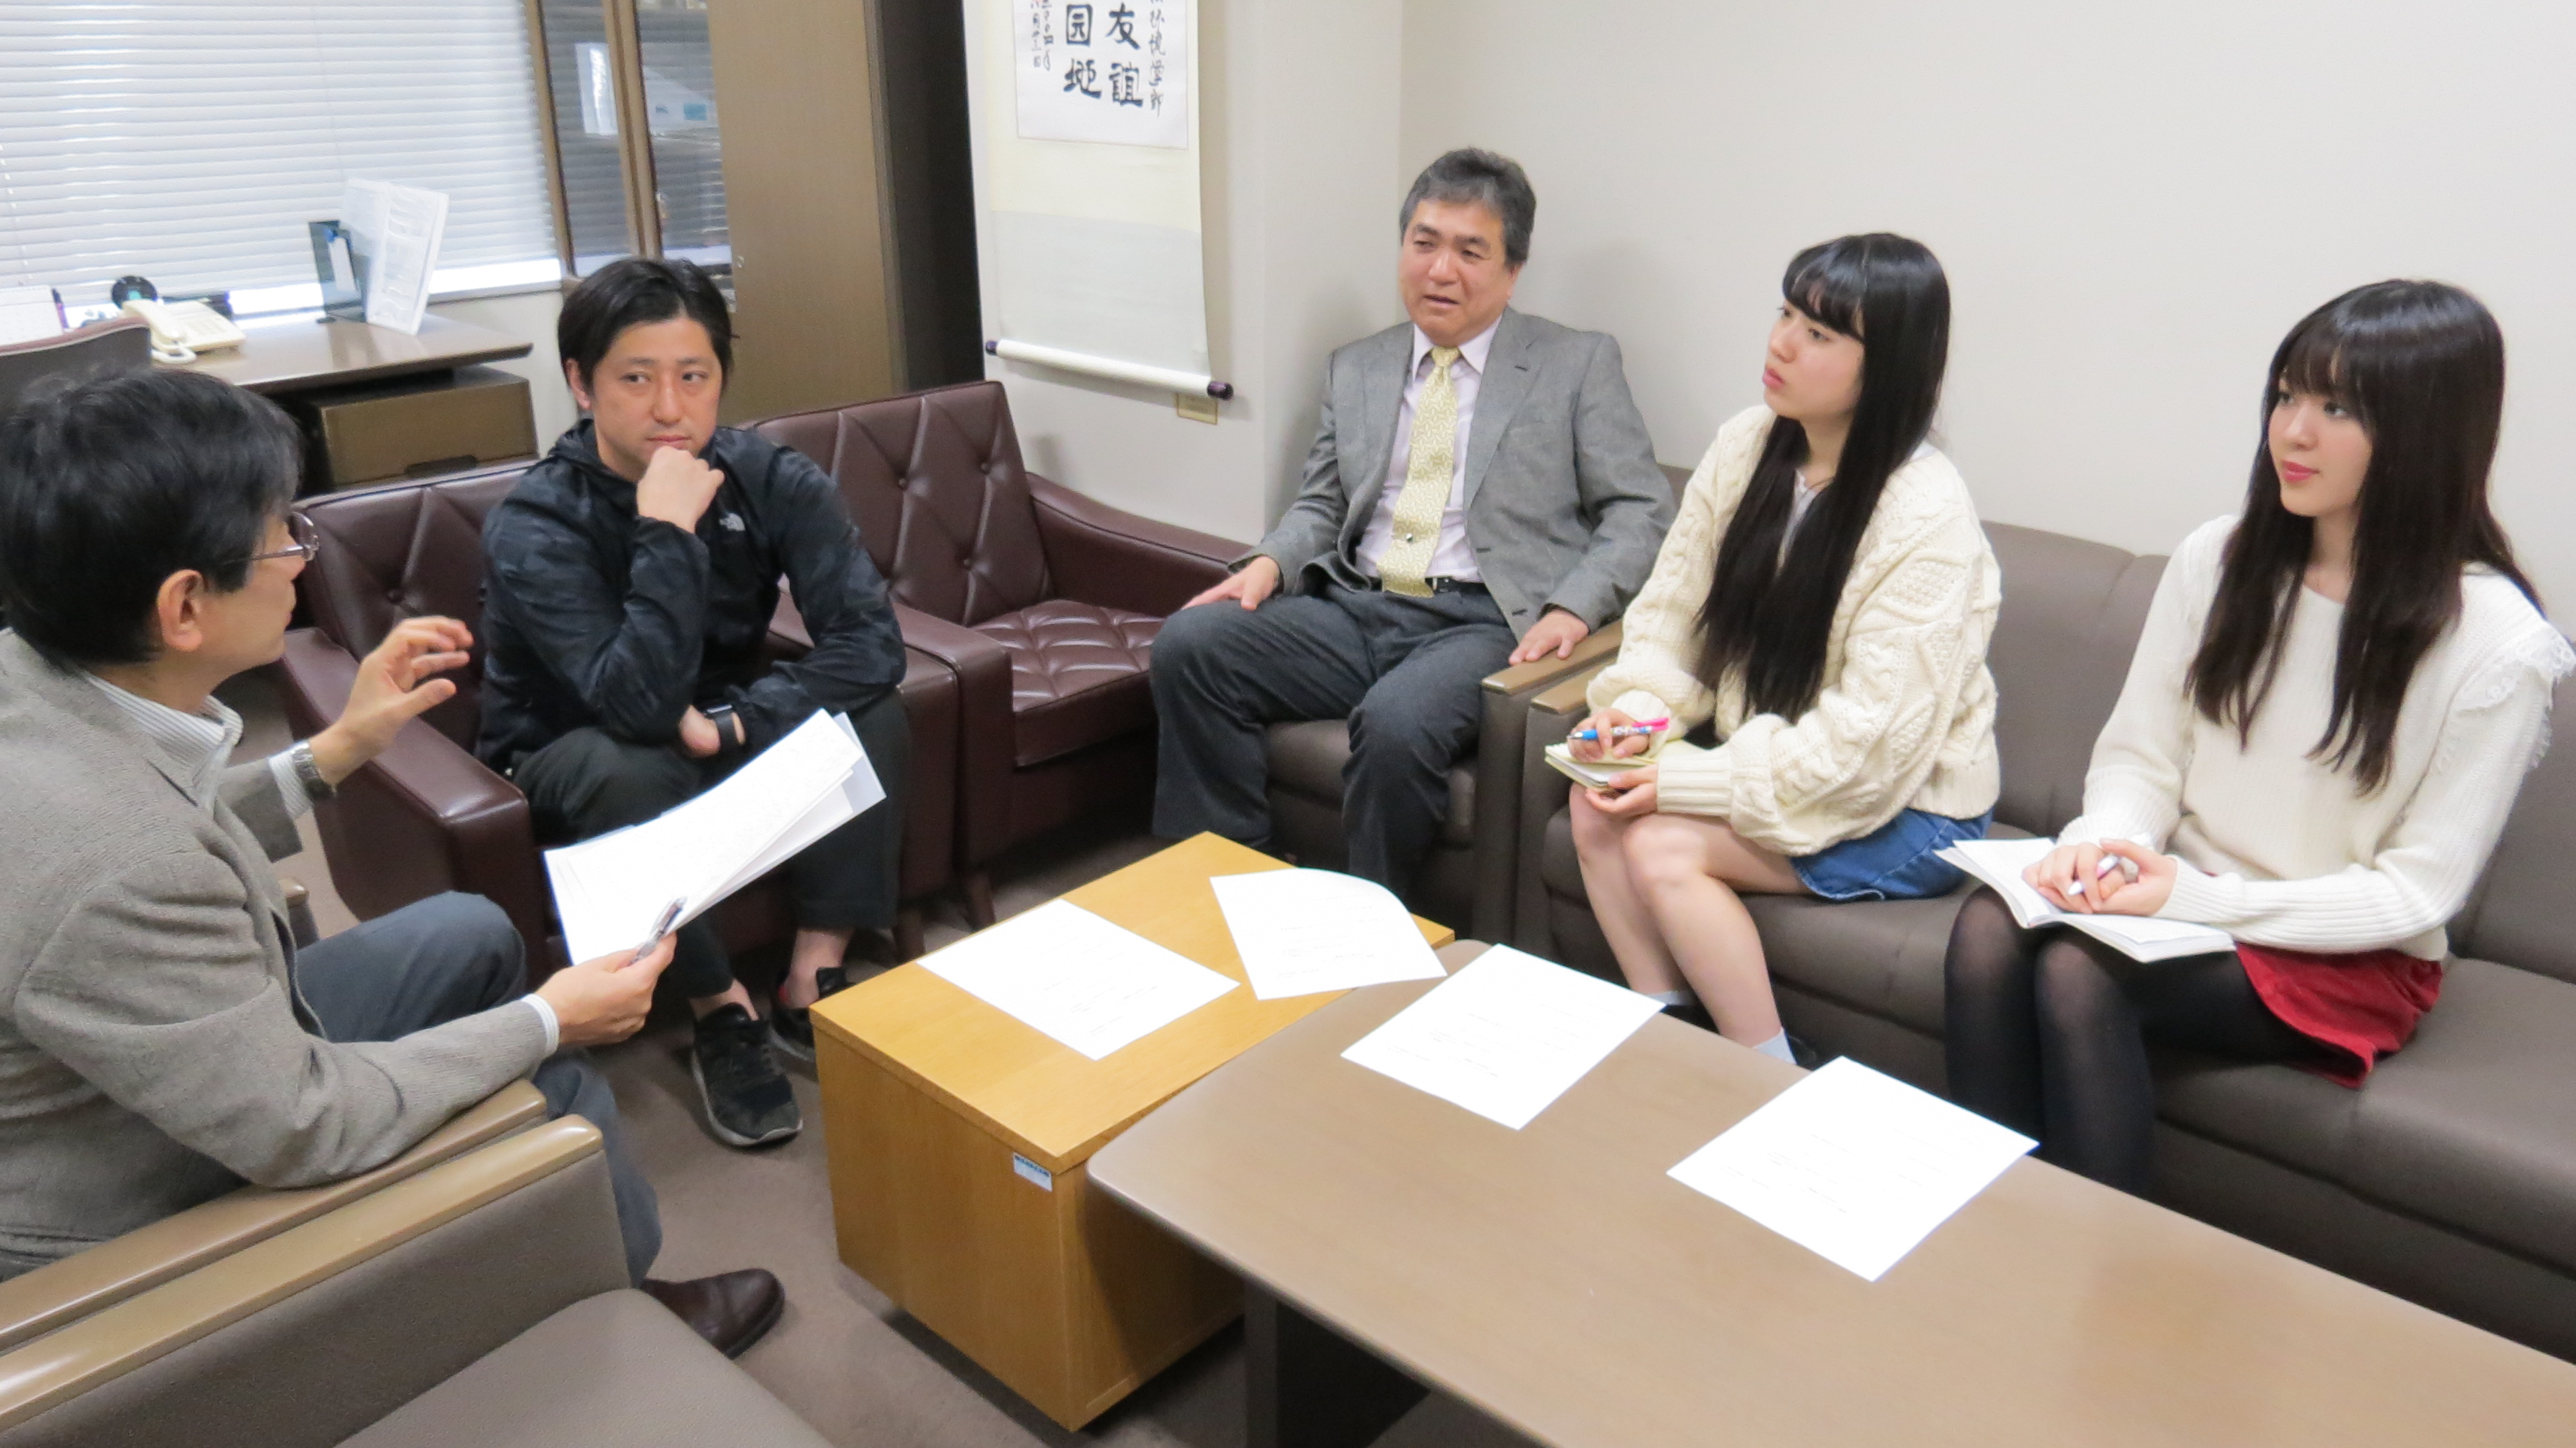 対談風景。左から、小島教授、齋藤さん、渡邊学部長、人間環境学部2年生の小川さん、3年生の東出さん